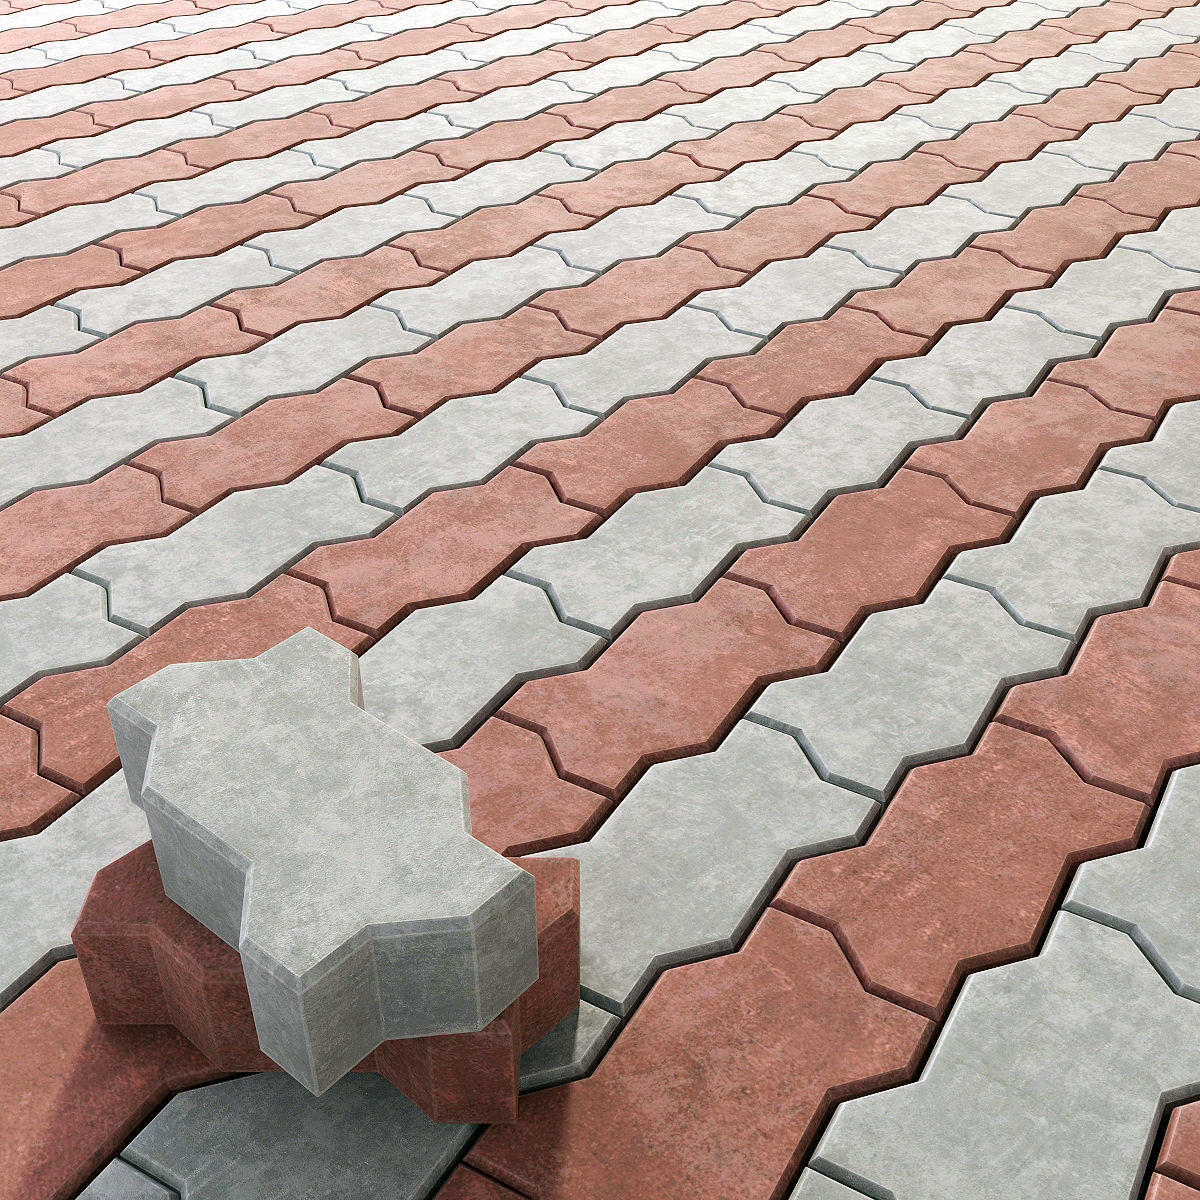 We manufacture durable concrete paving bricks that lasts.